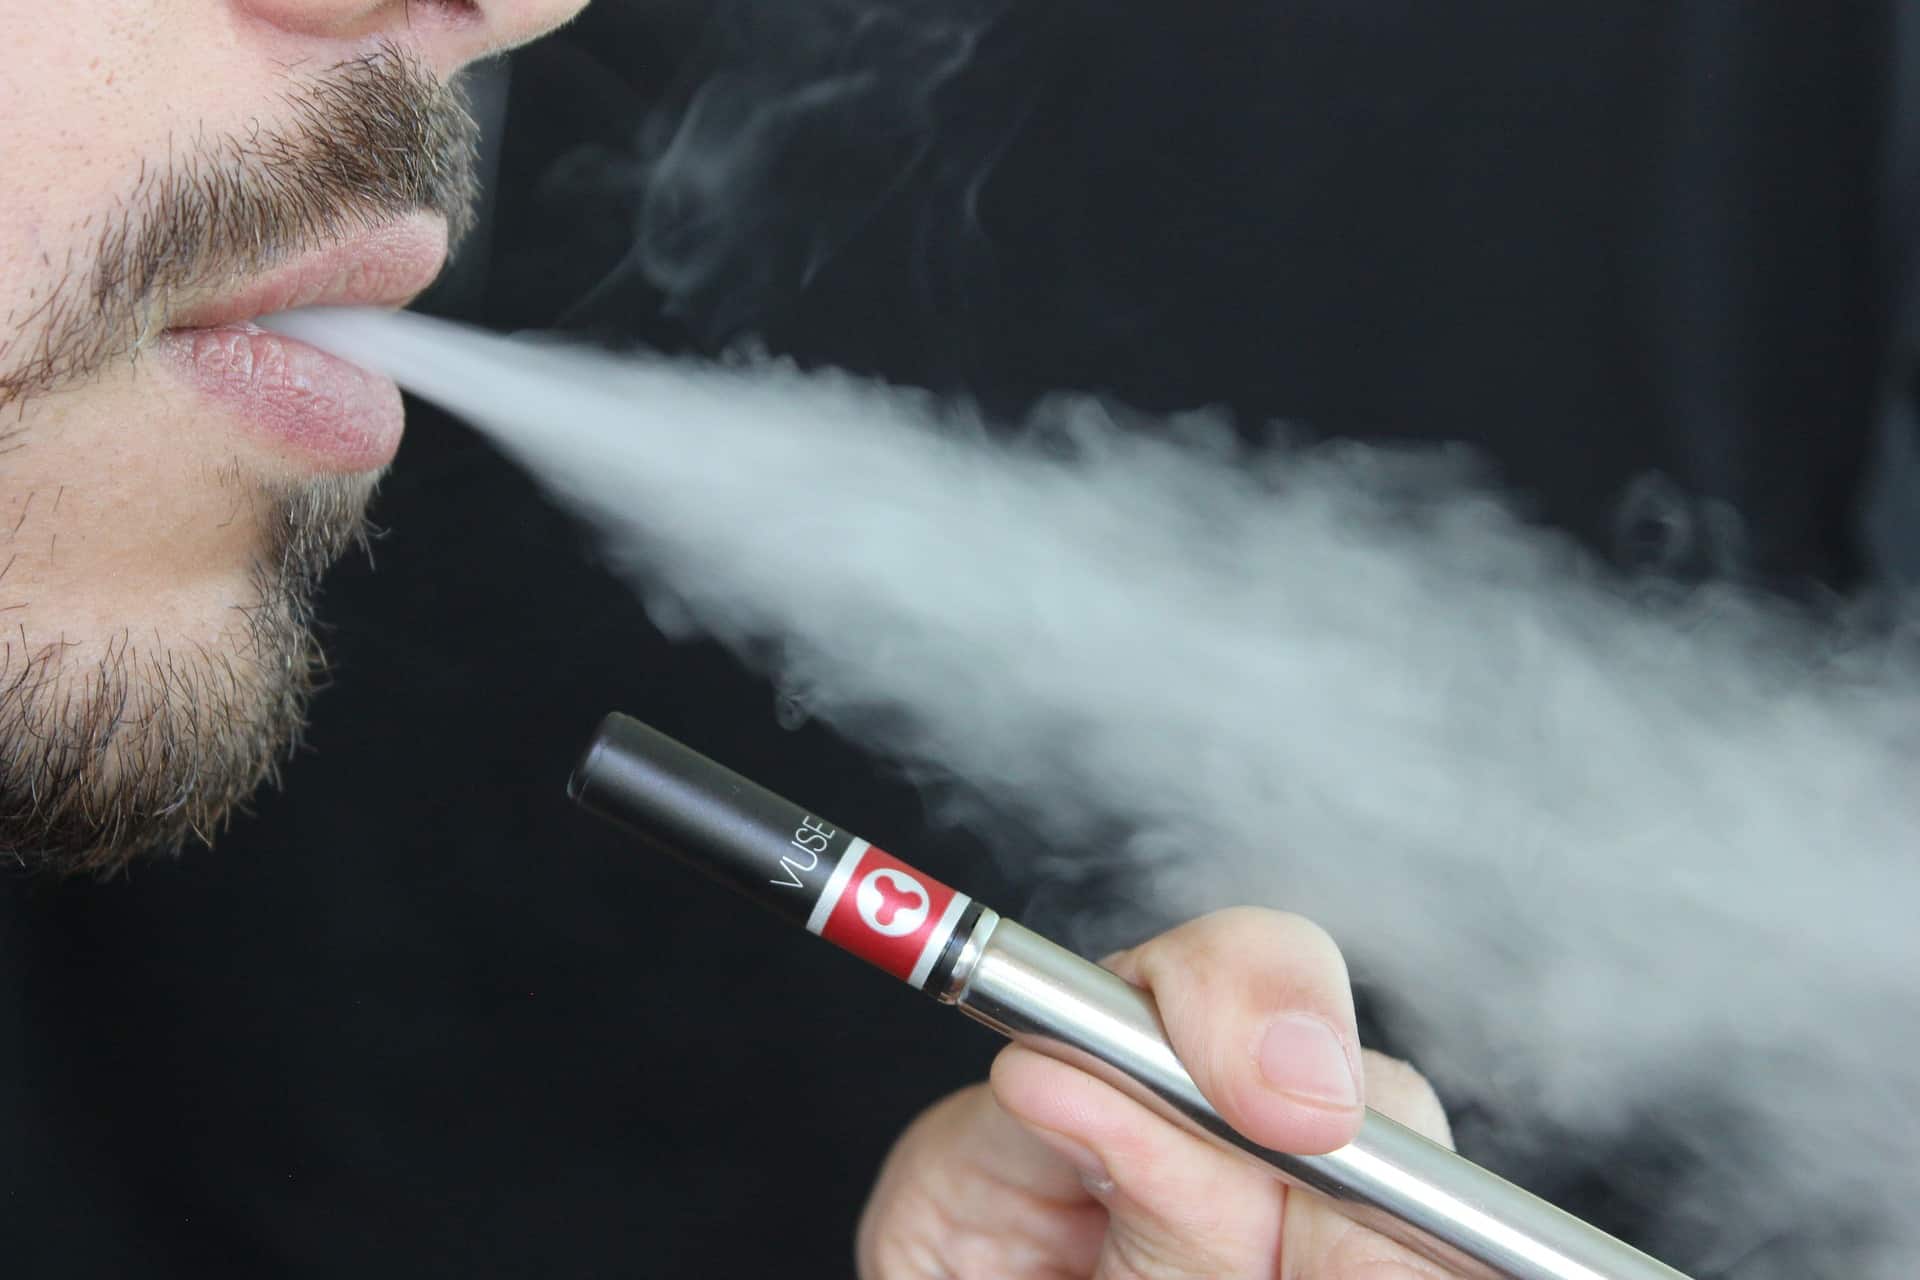 אזהרה: נמצאו סיגריות אלקטרוניות המכילות סמים